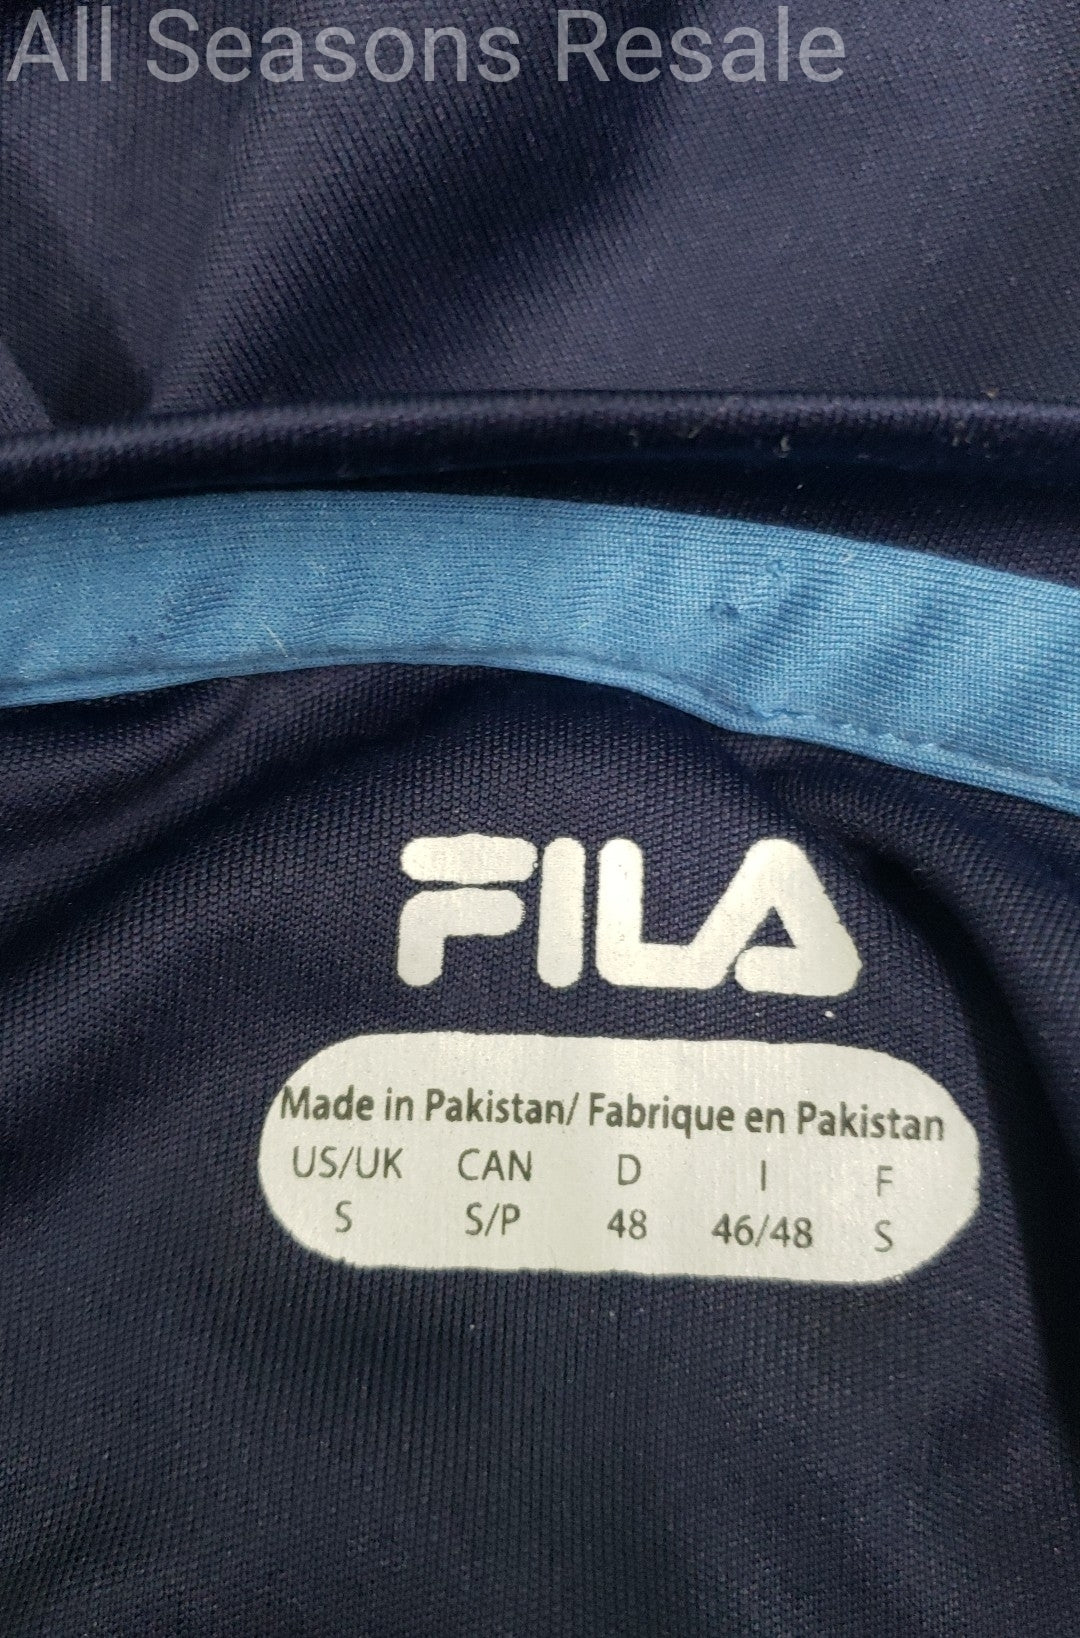 Men's Fila Activewear T Shirt Top Blus Size S 2D